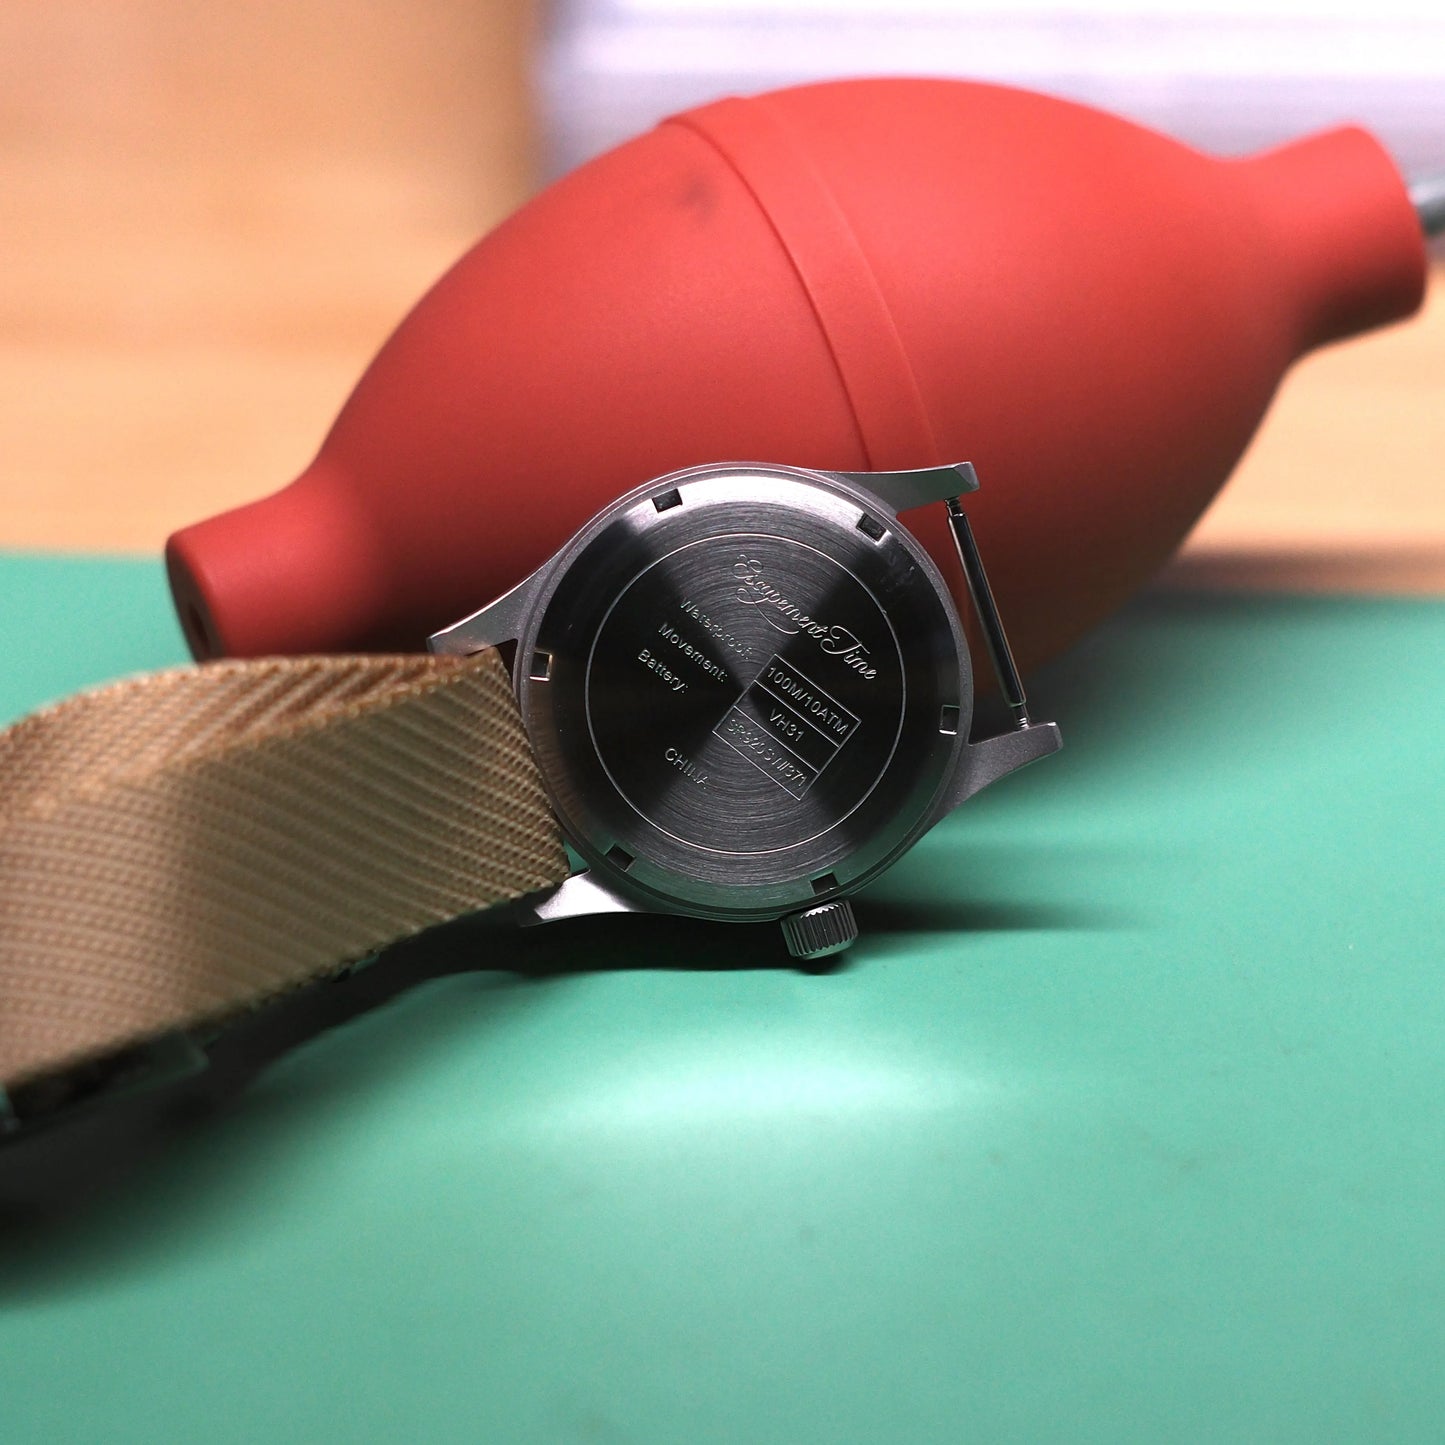 【エスケープメントタイム】VH31クォーツムーブメント 腕時計 38mmケース 防水100M スーパールミナス